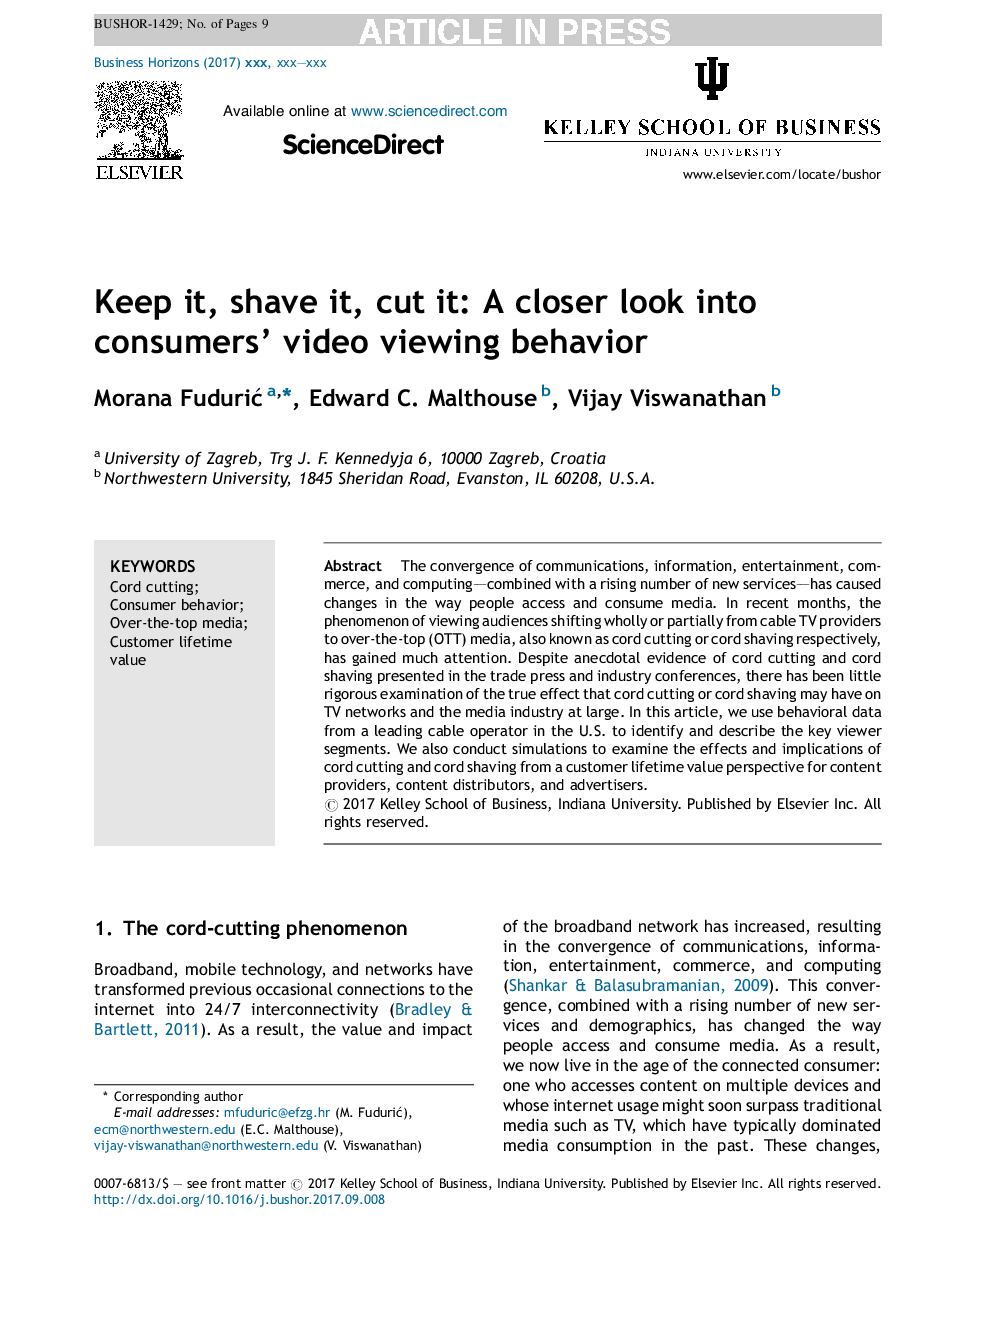 آن را نگه دارید، آن را بشویید، برش دهید: نگاه دقیق تر به رفتار تماشای ویدیوهای مصرف کننده 